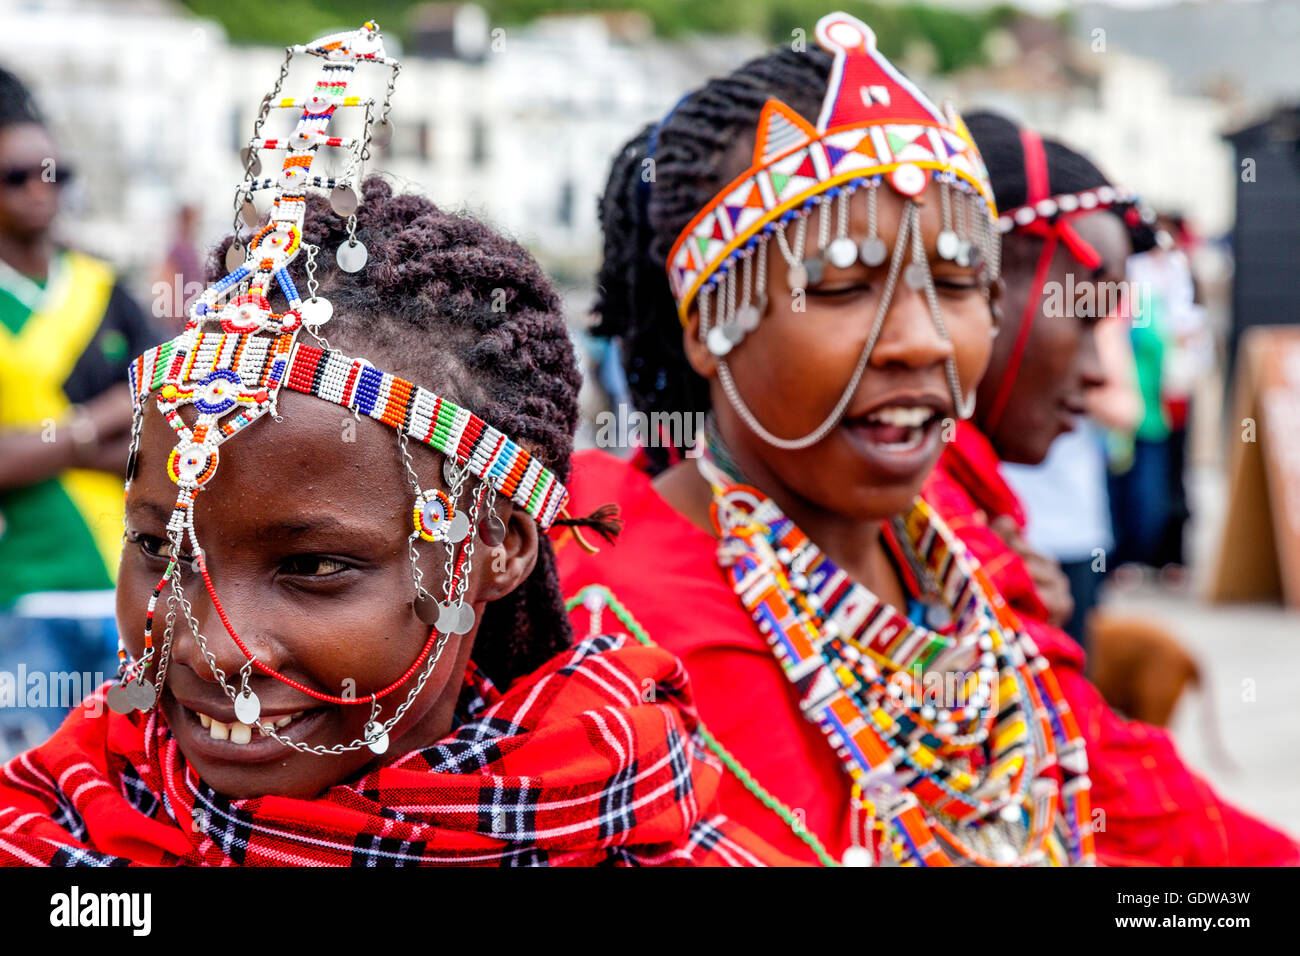 Un groupe de femmes africaines en costume traditionnel sur Hastings Pier Au cours de la Pirate Day Festival, Hastings, Sussex, UK Banque D'Images